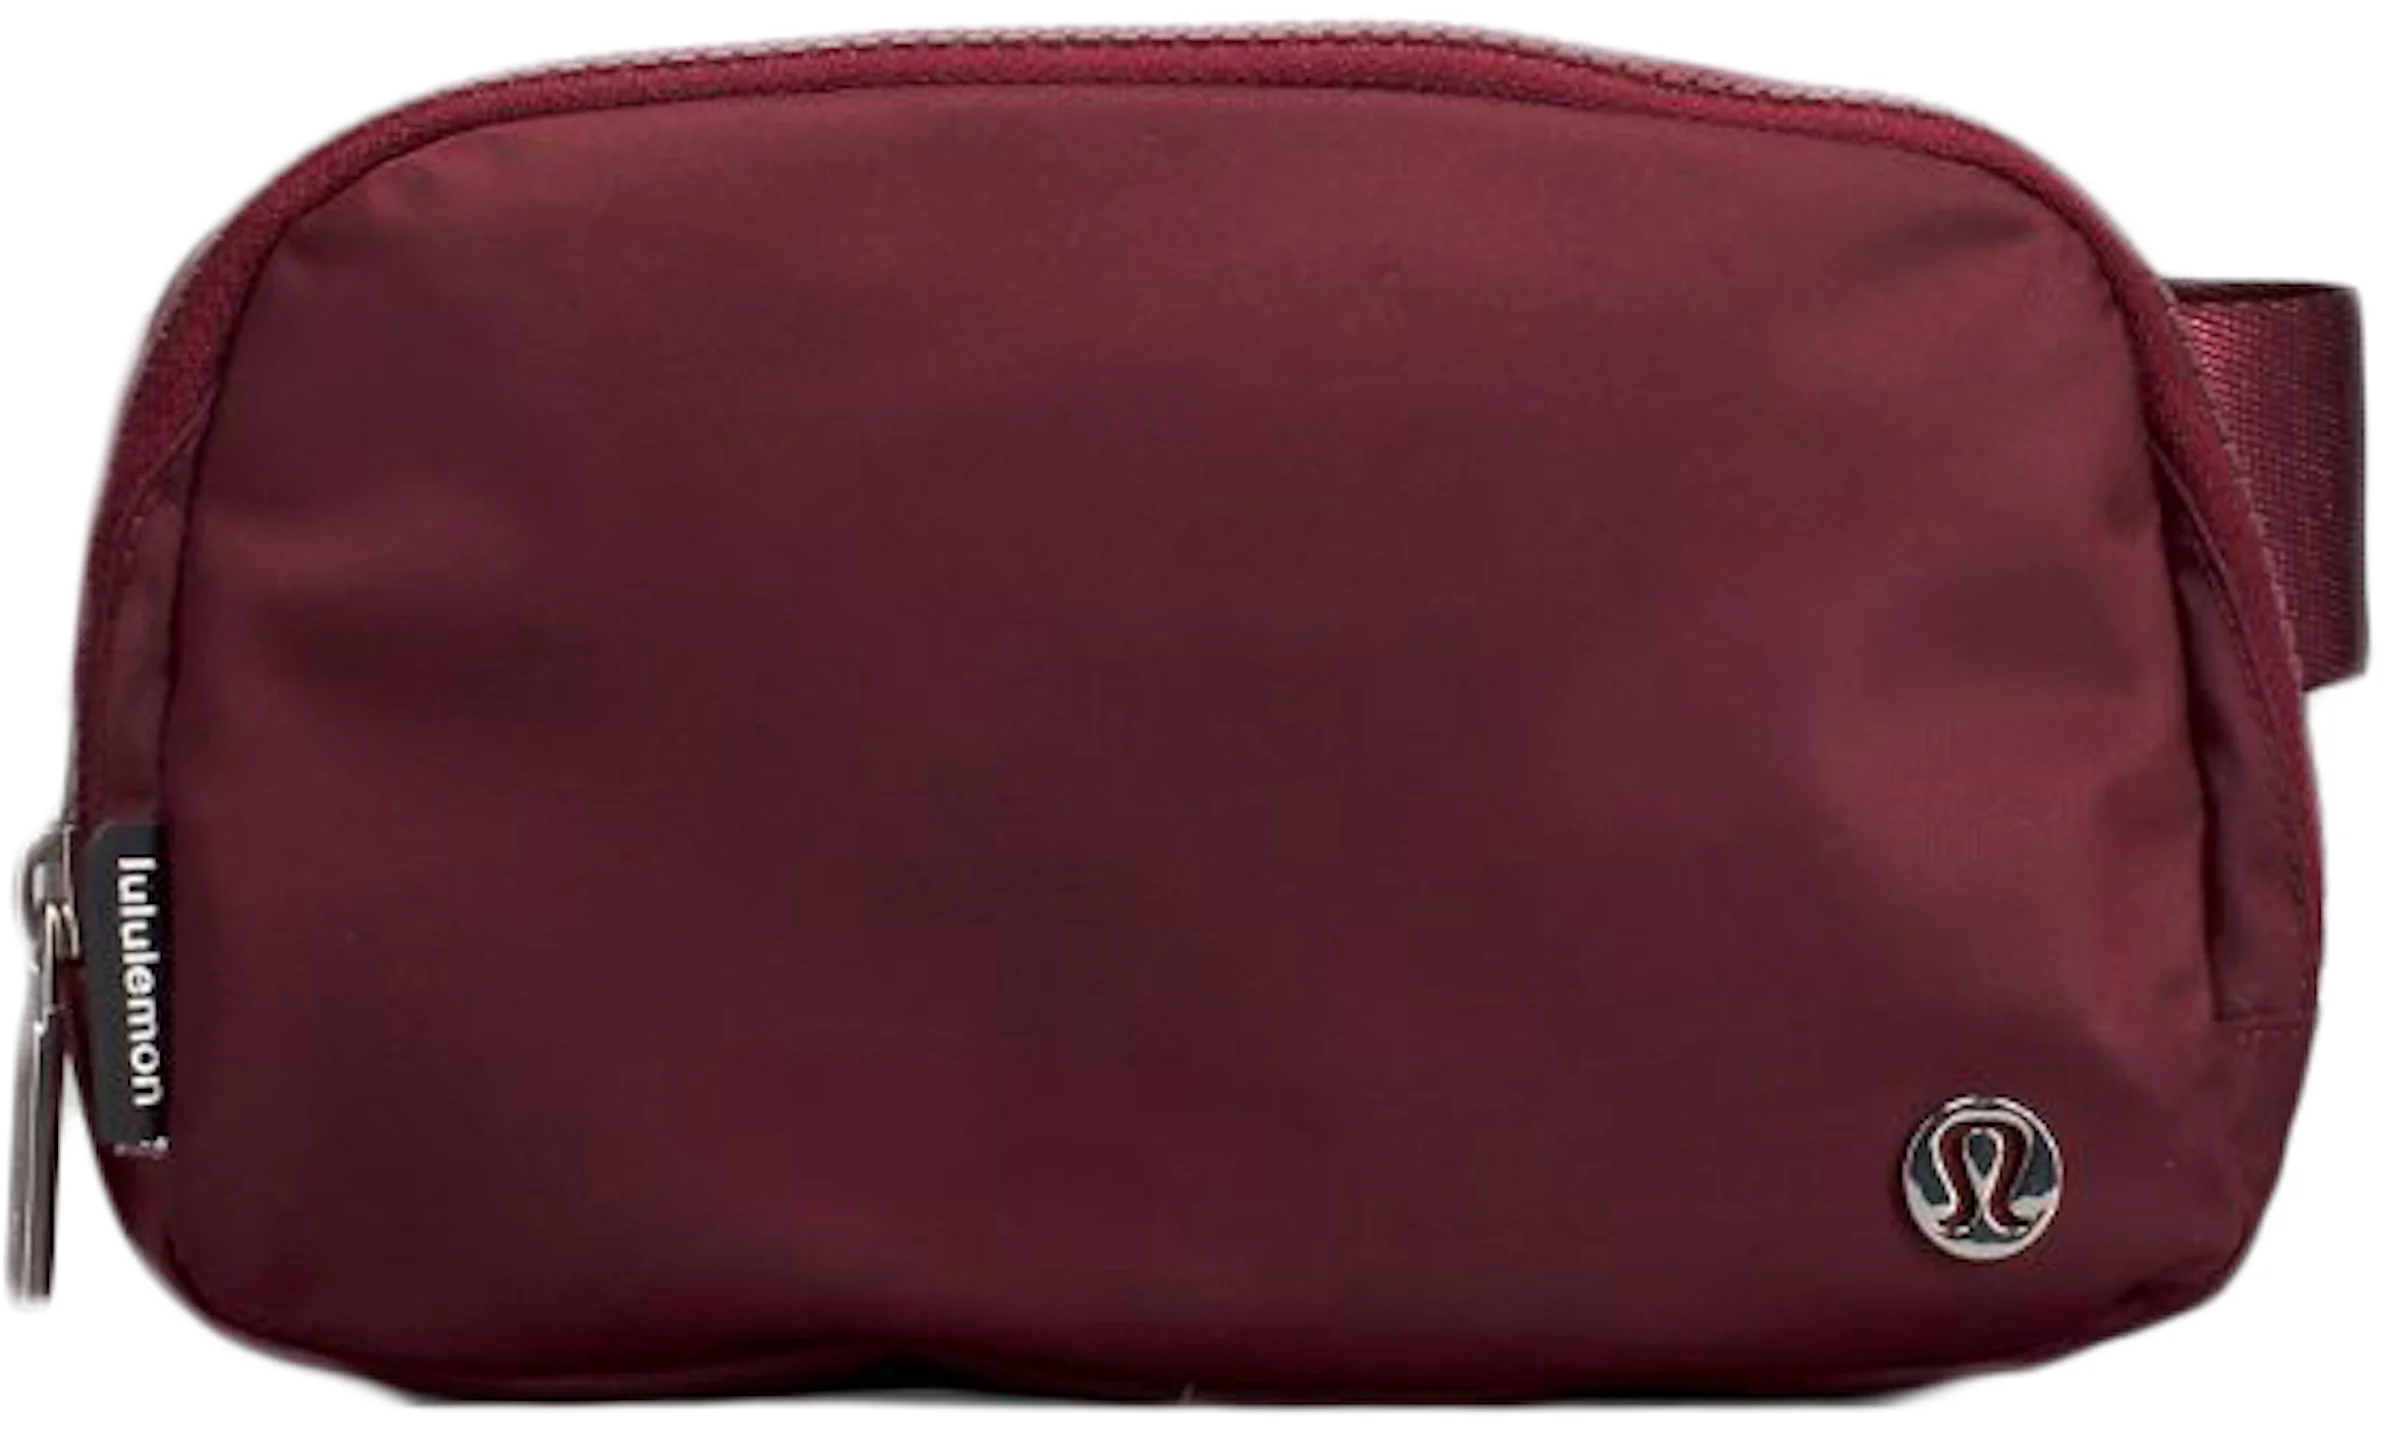 Lululemon Everywhere Belt Bag Crossbody Bag Red Merlot in Waterproof  Polyester - US